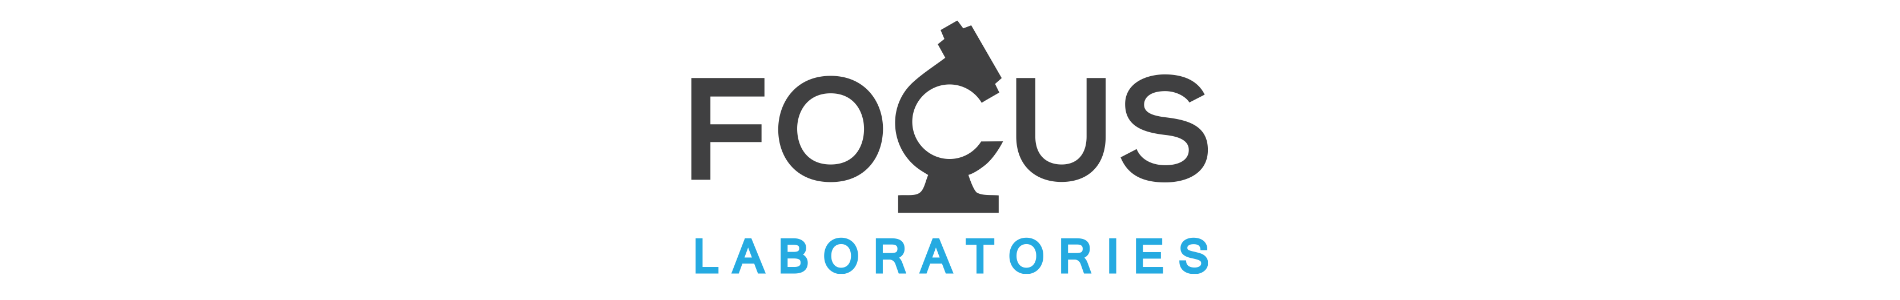 Focus Laboratories